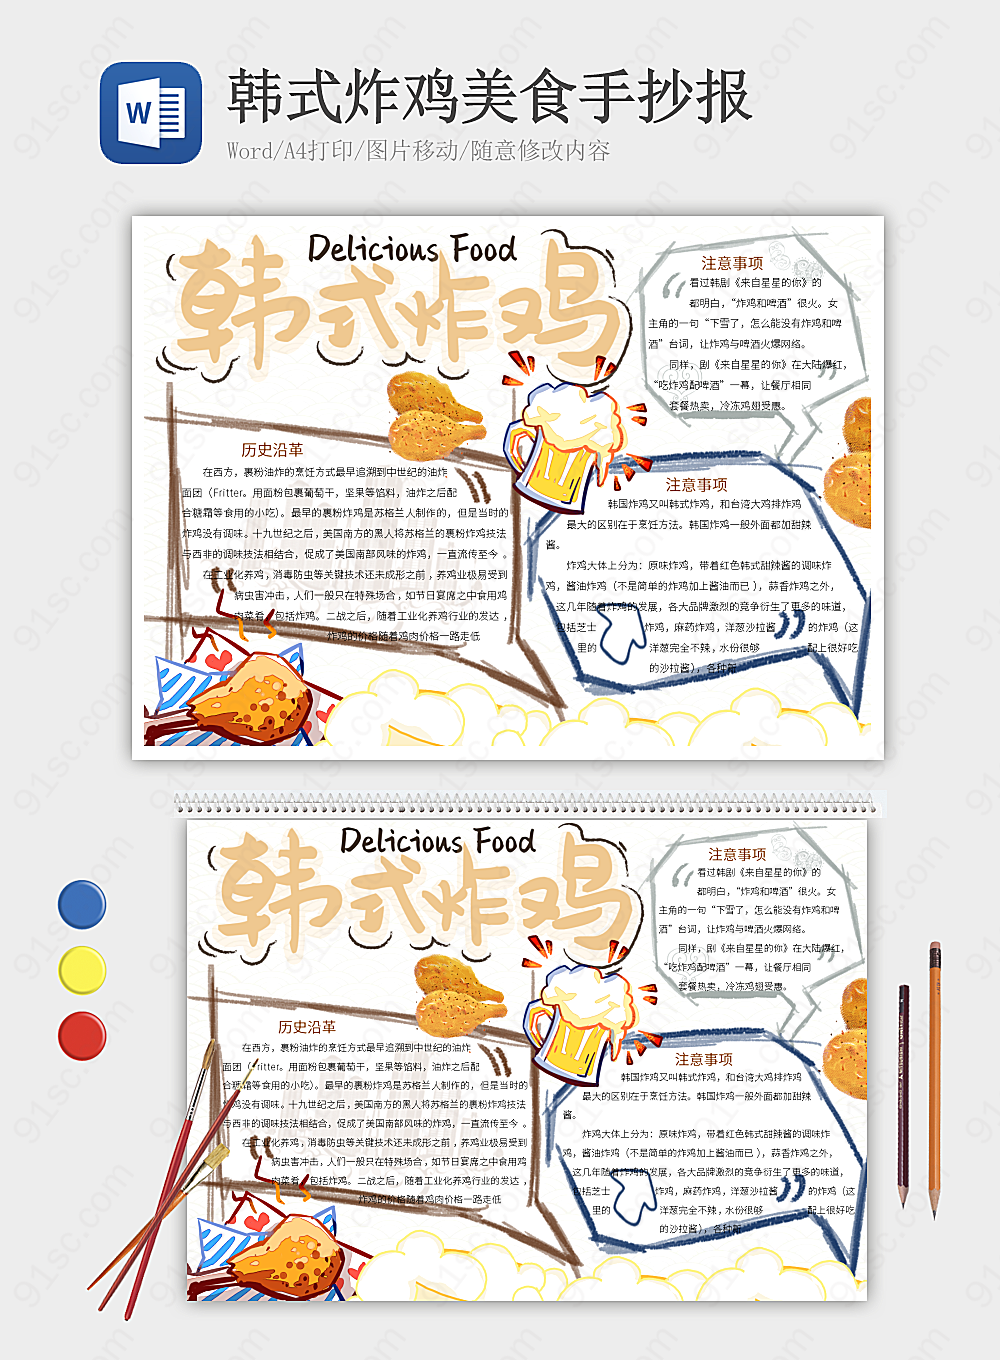 韩式炸鸡的美味世界手抄报记录的多样口感与独特风味美食小报小报海报Word模板下载